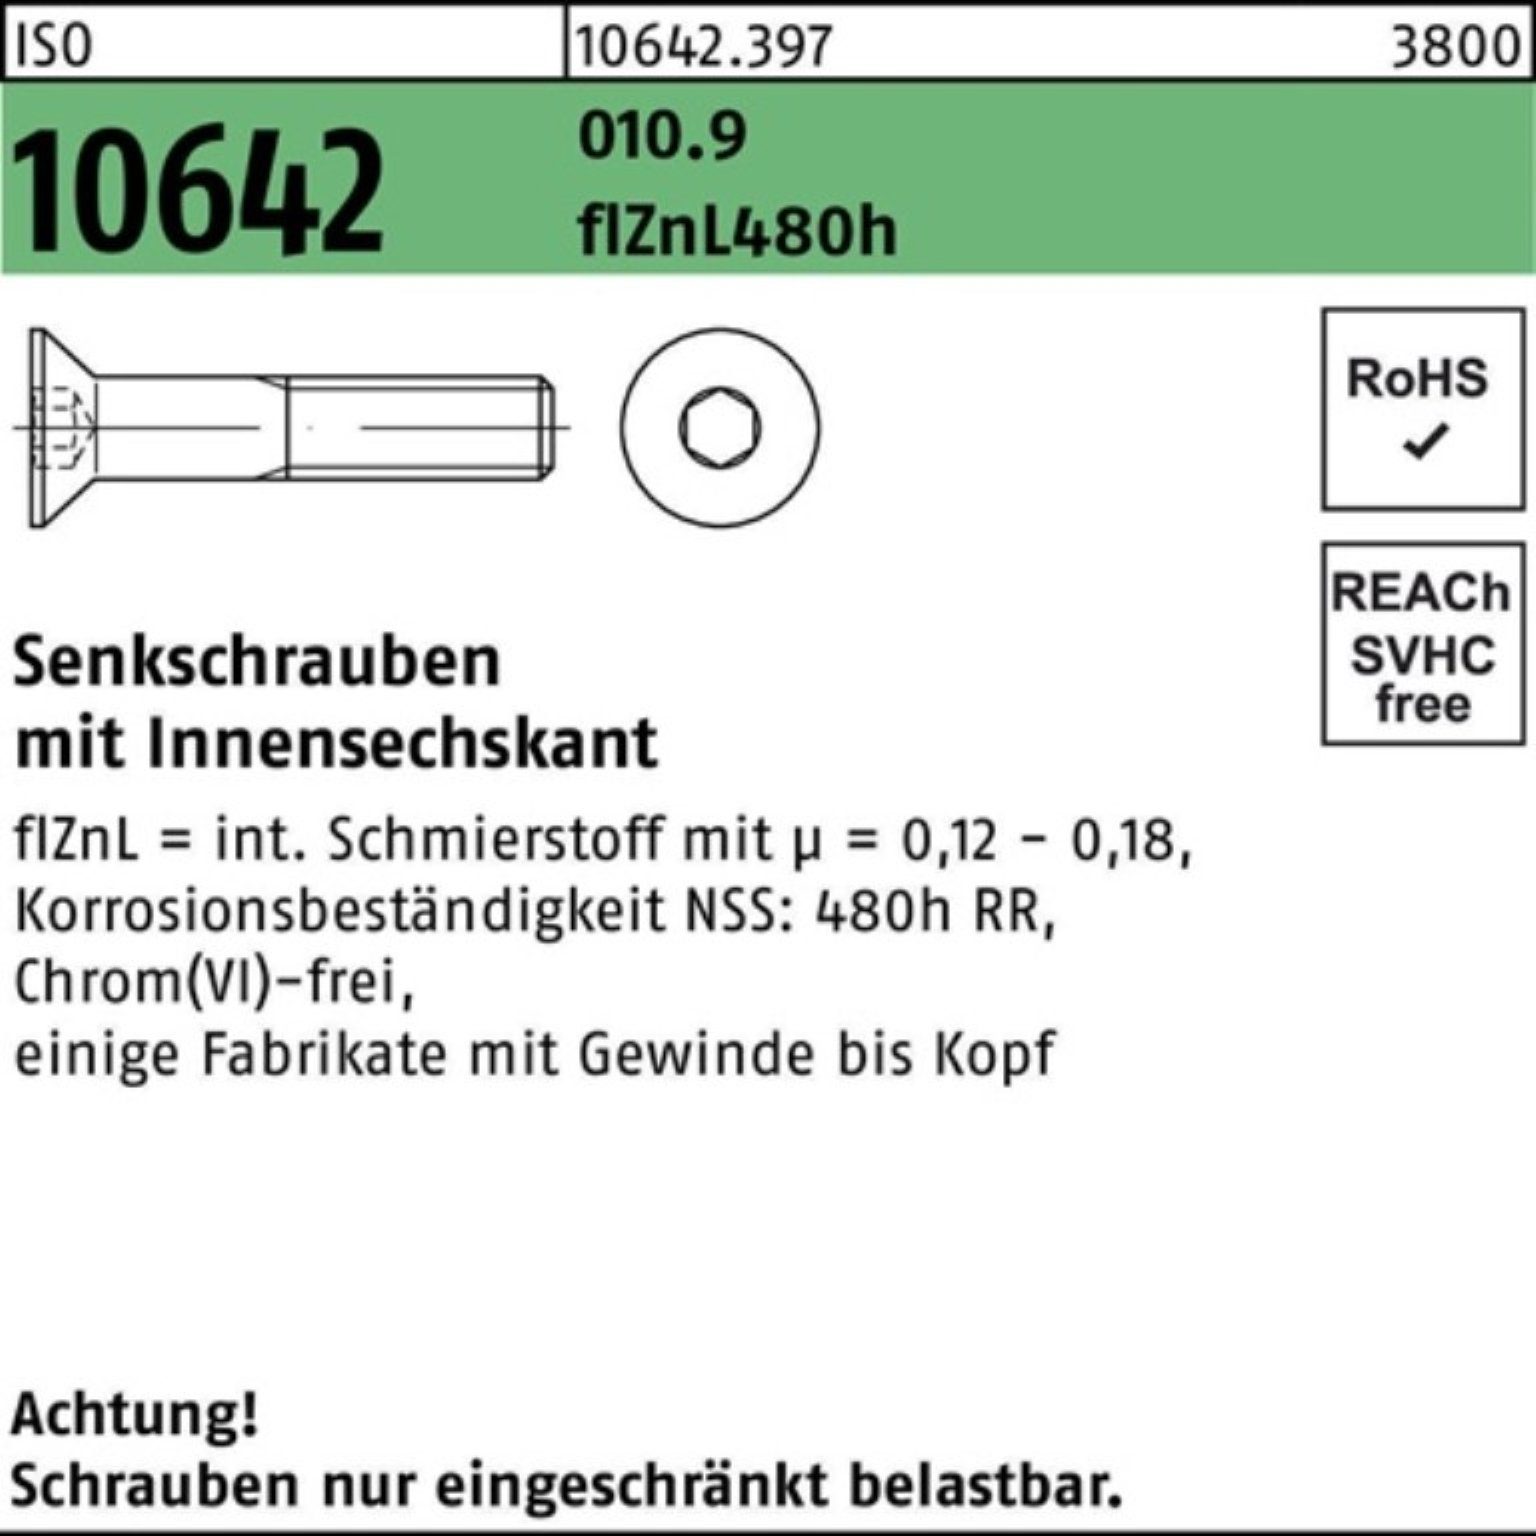 Reyher Senkschraube 100er Pack Senkschraube ISO 10642 Innen-6kt M12x50 010.9 flZnL 480h zi